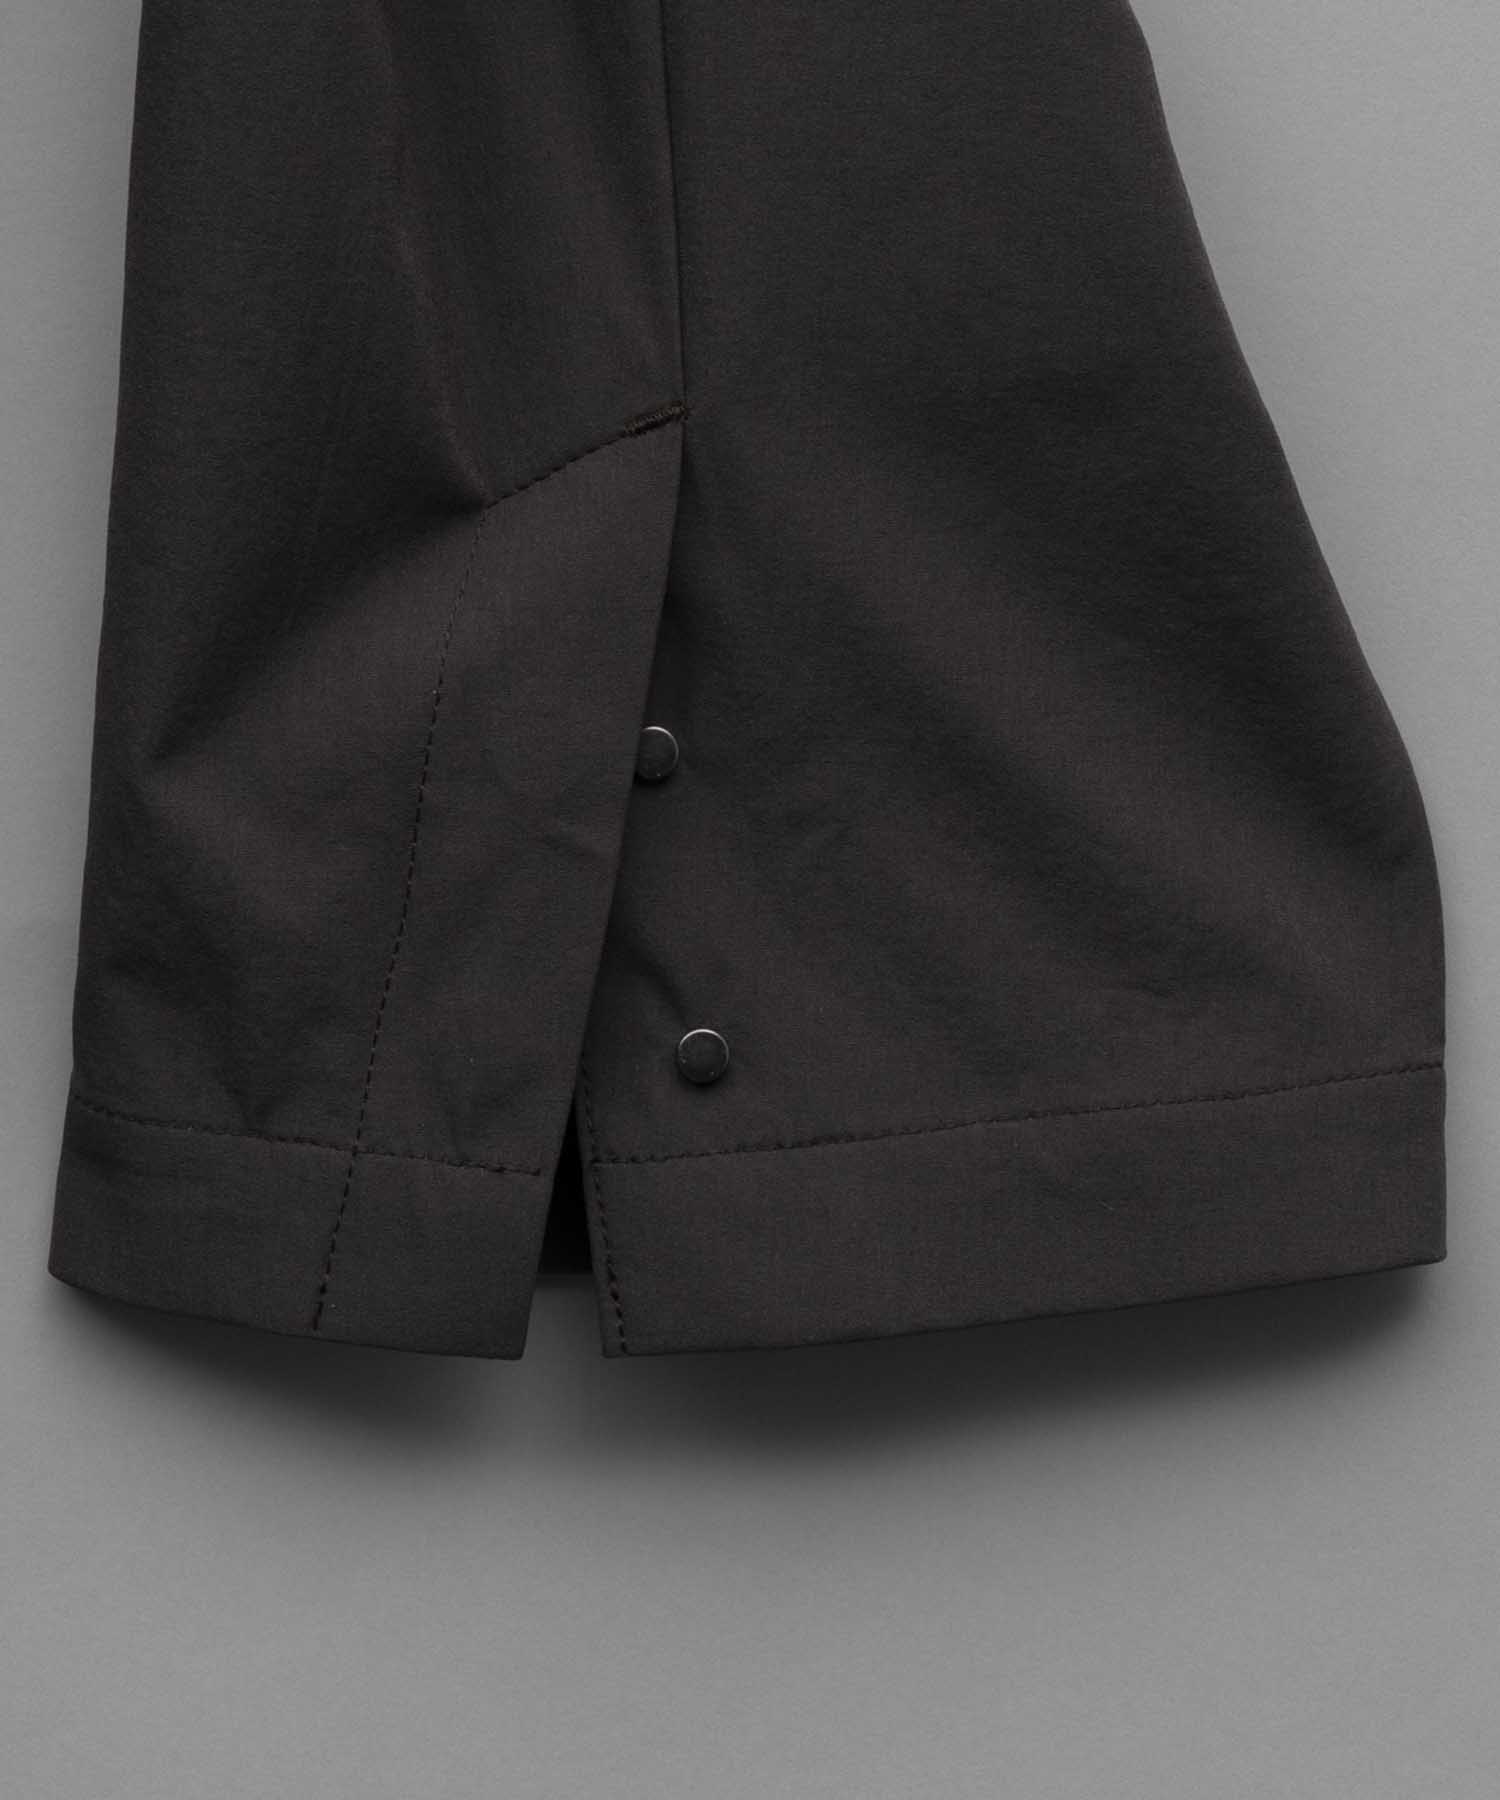 【SPORTS TECH HIGH SPEC LINE】Oversized Many Pockets Tailored Jacket